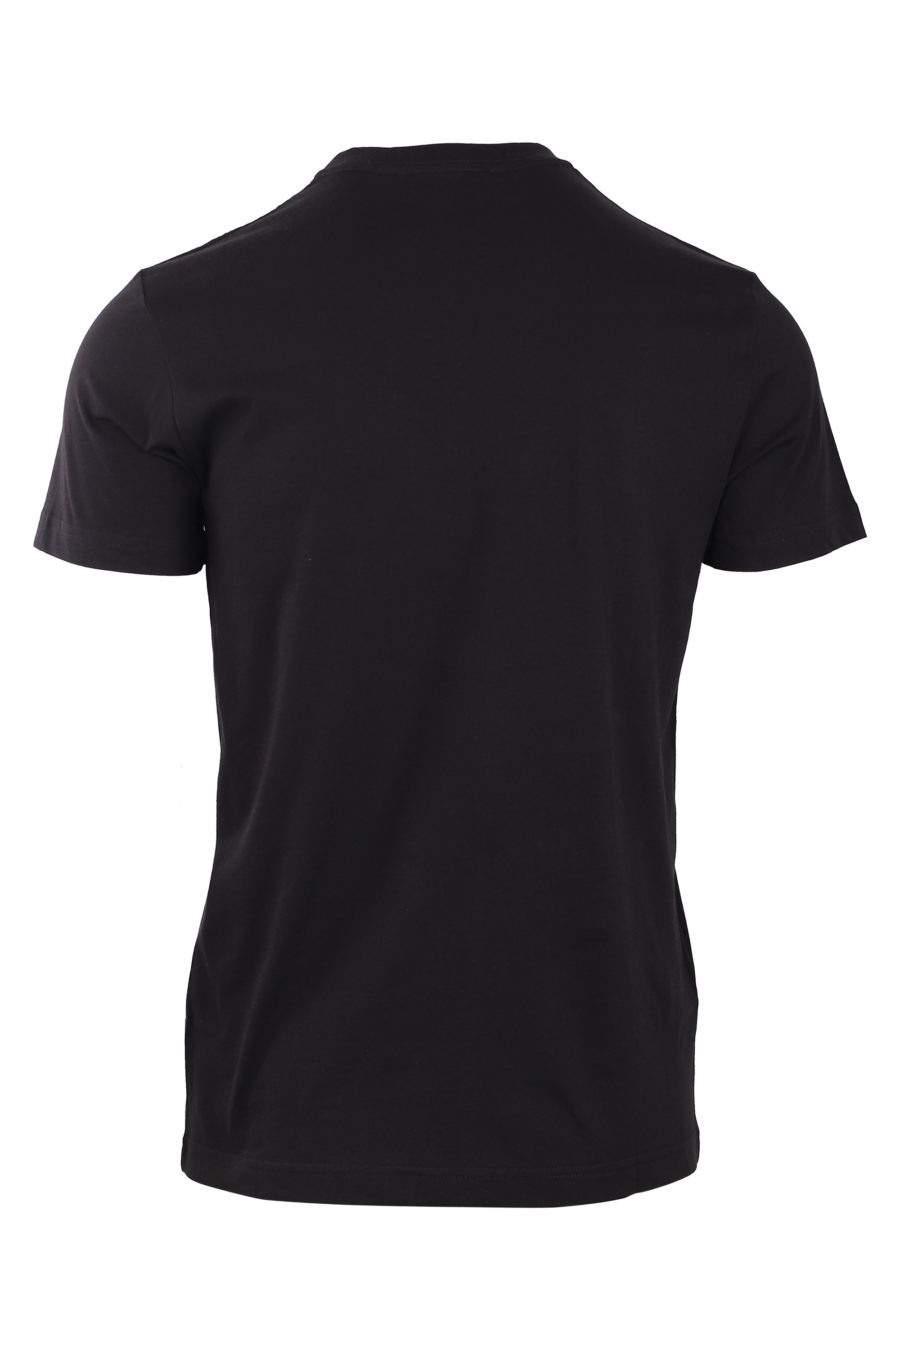 Camiseta negra con maxilogo tornasol - IMG 0781